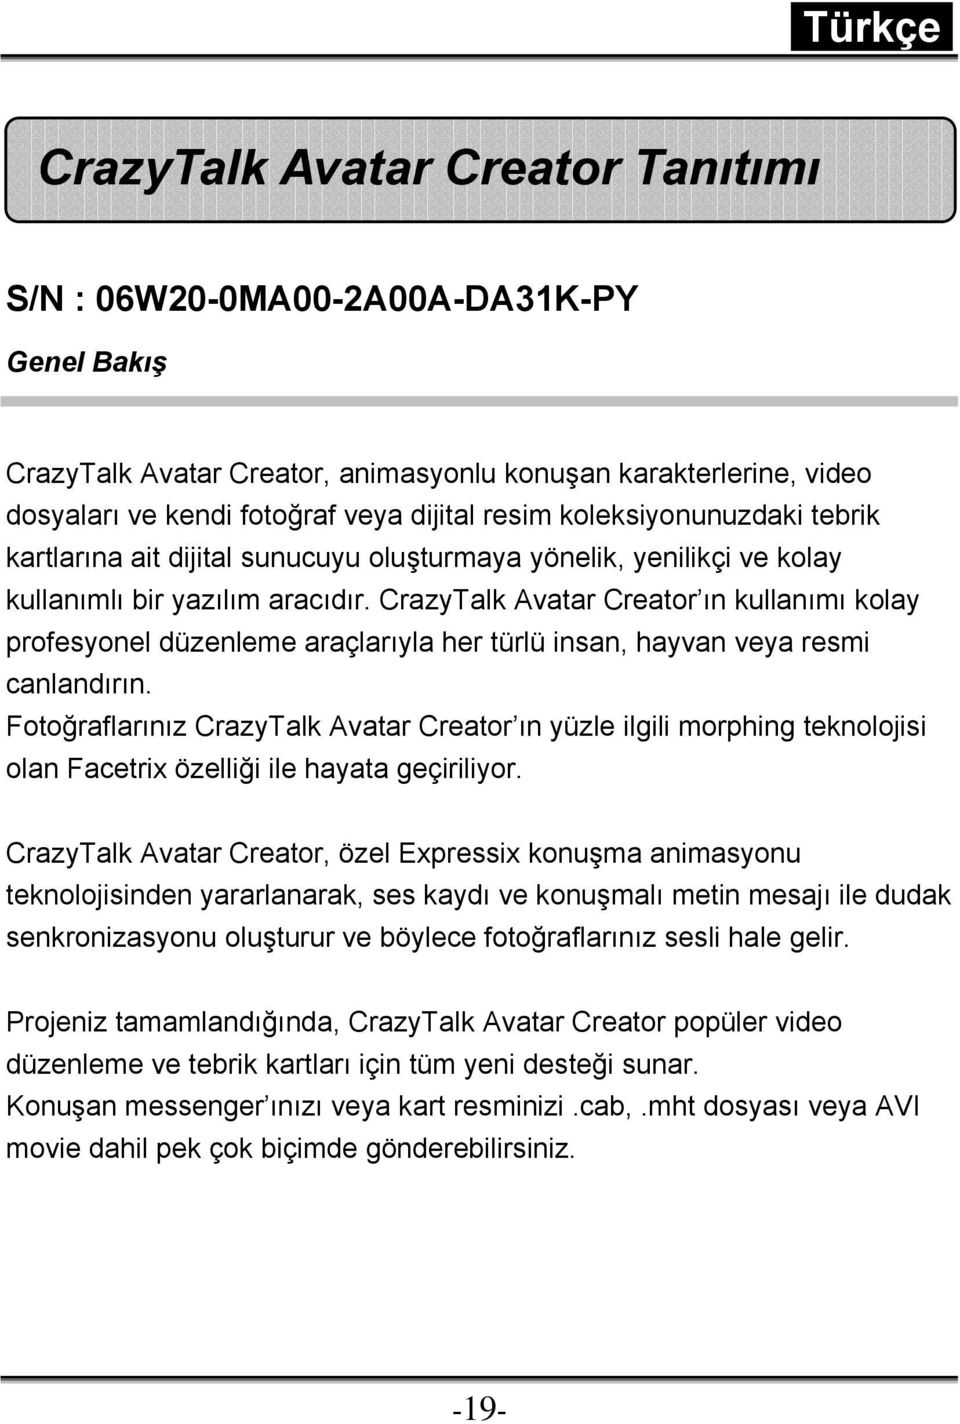 CrazyTalk Avatar Creator ın kullanımı kolay profesyonel düzenleme araçlarıyla her türlü insan, hayvan veya resmi canlandırın.